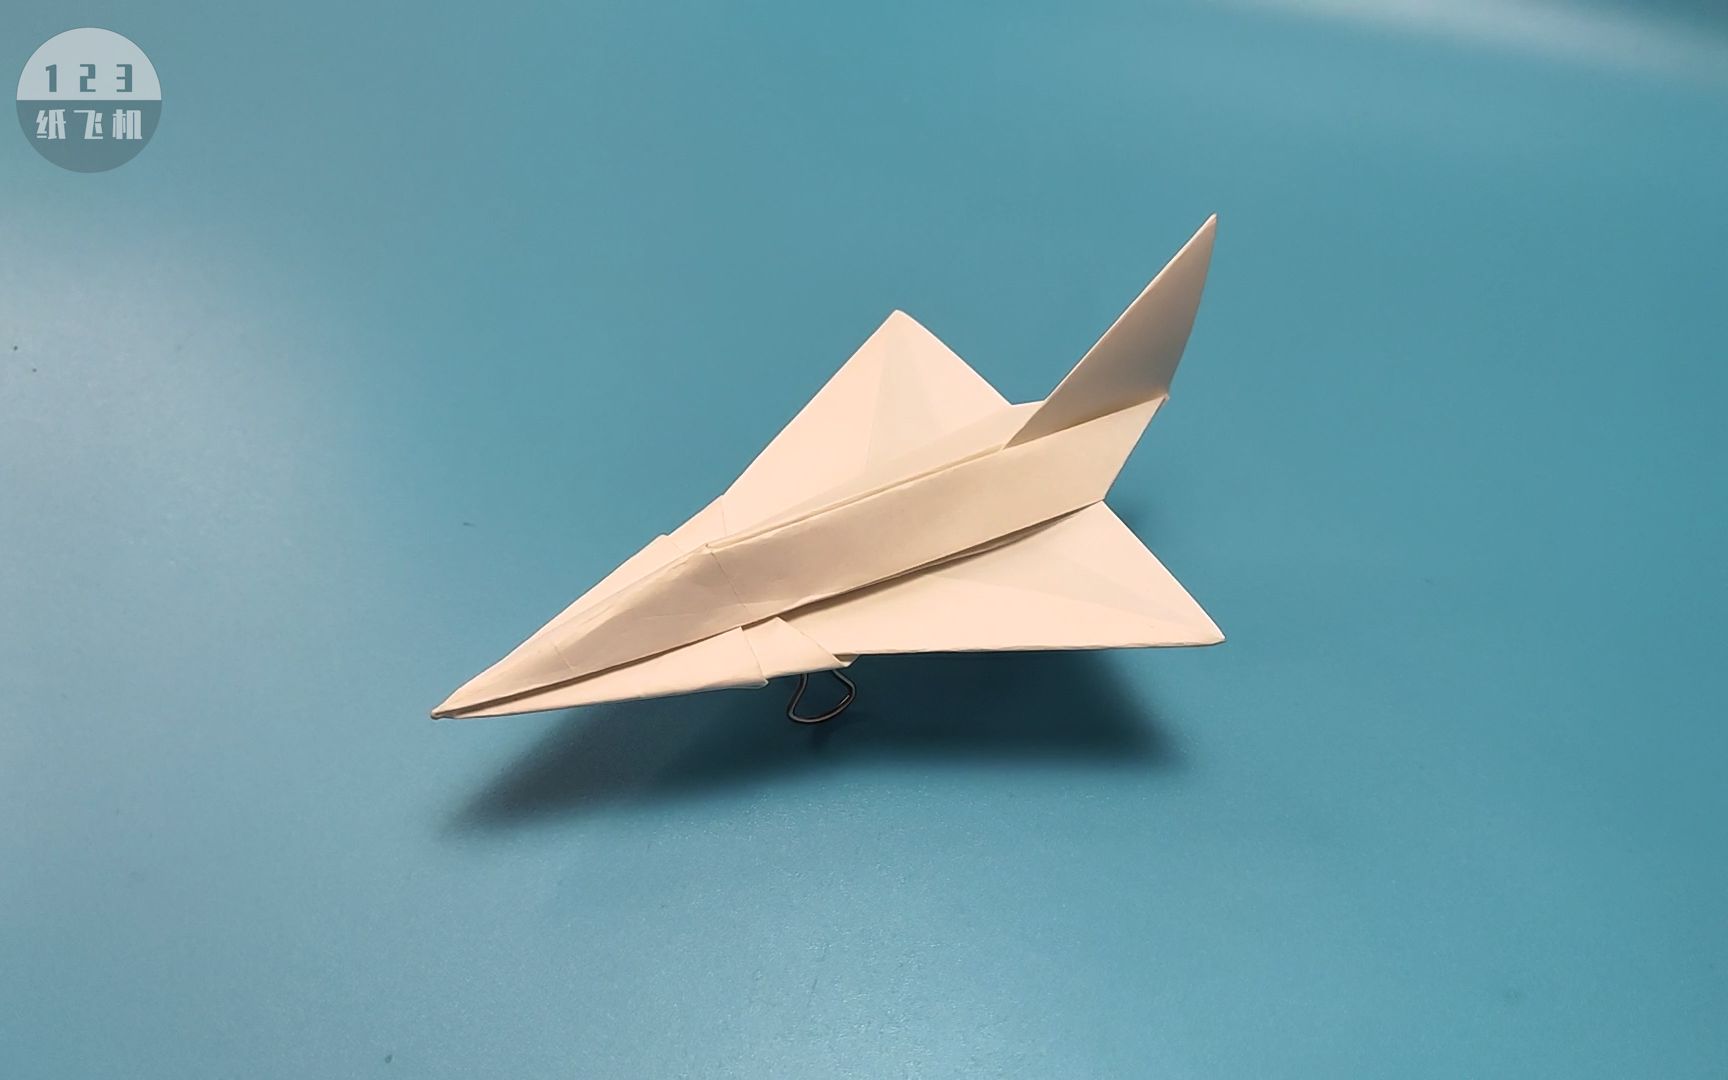 世上最酷的纸飞机之一,可以飞的f